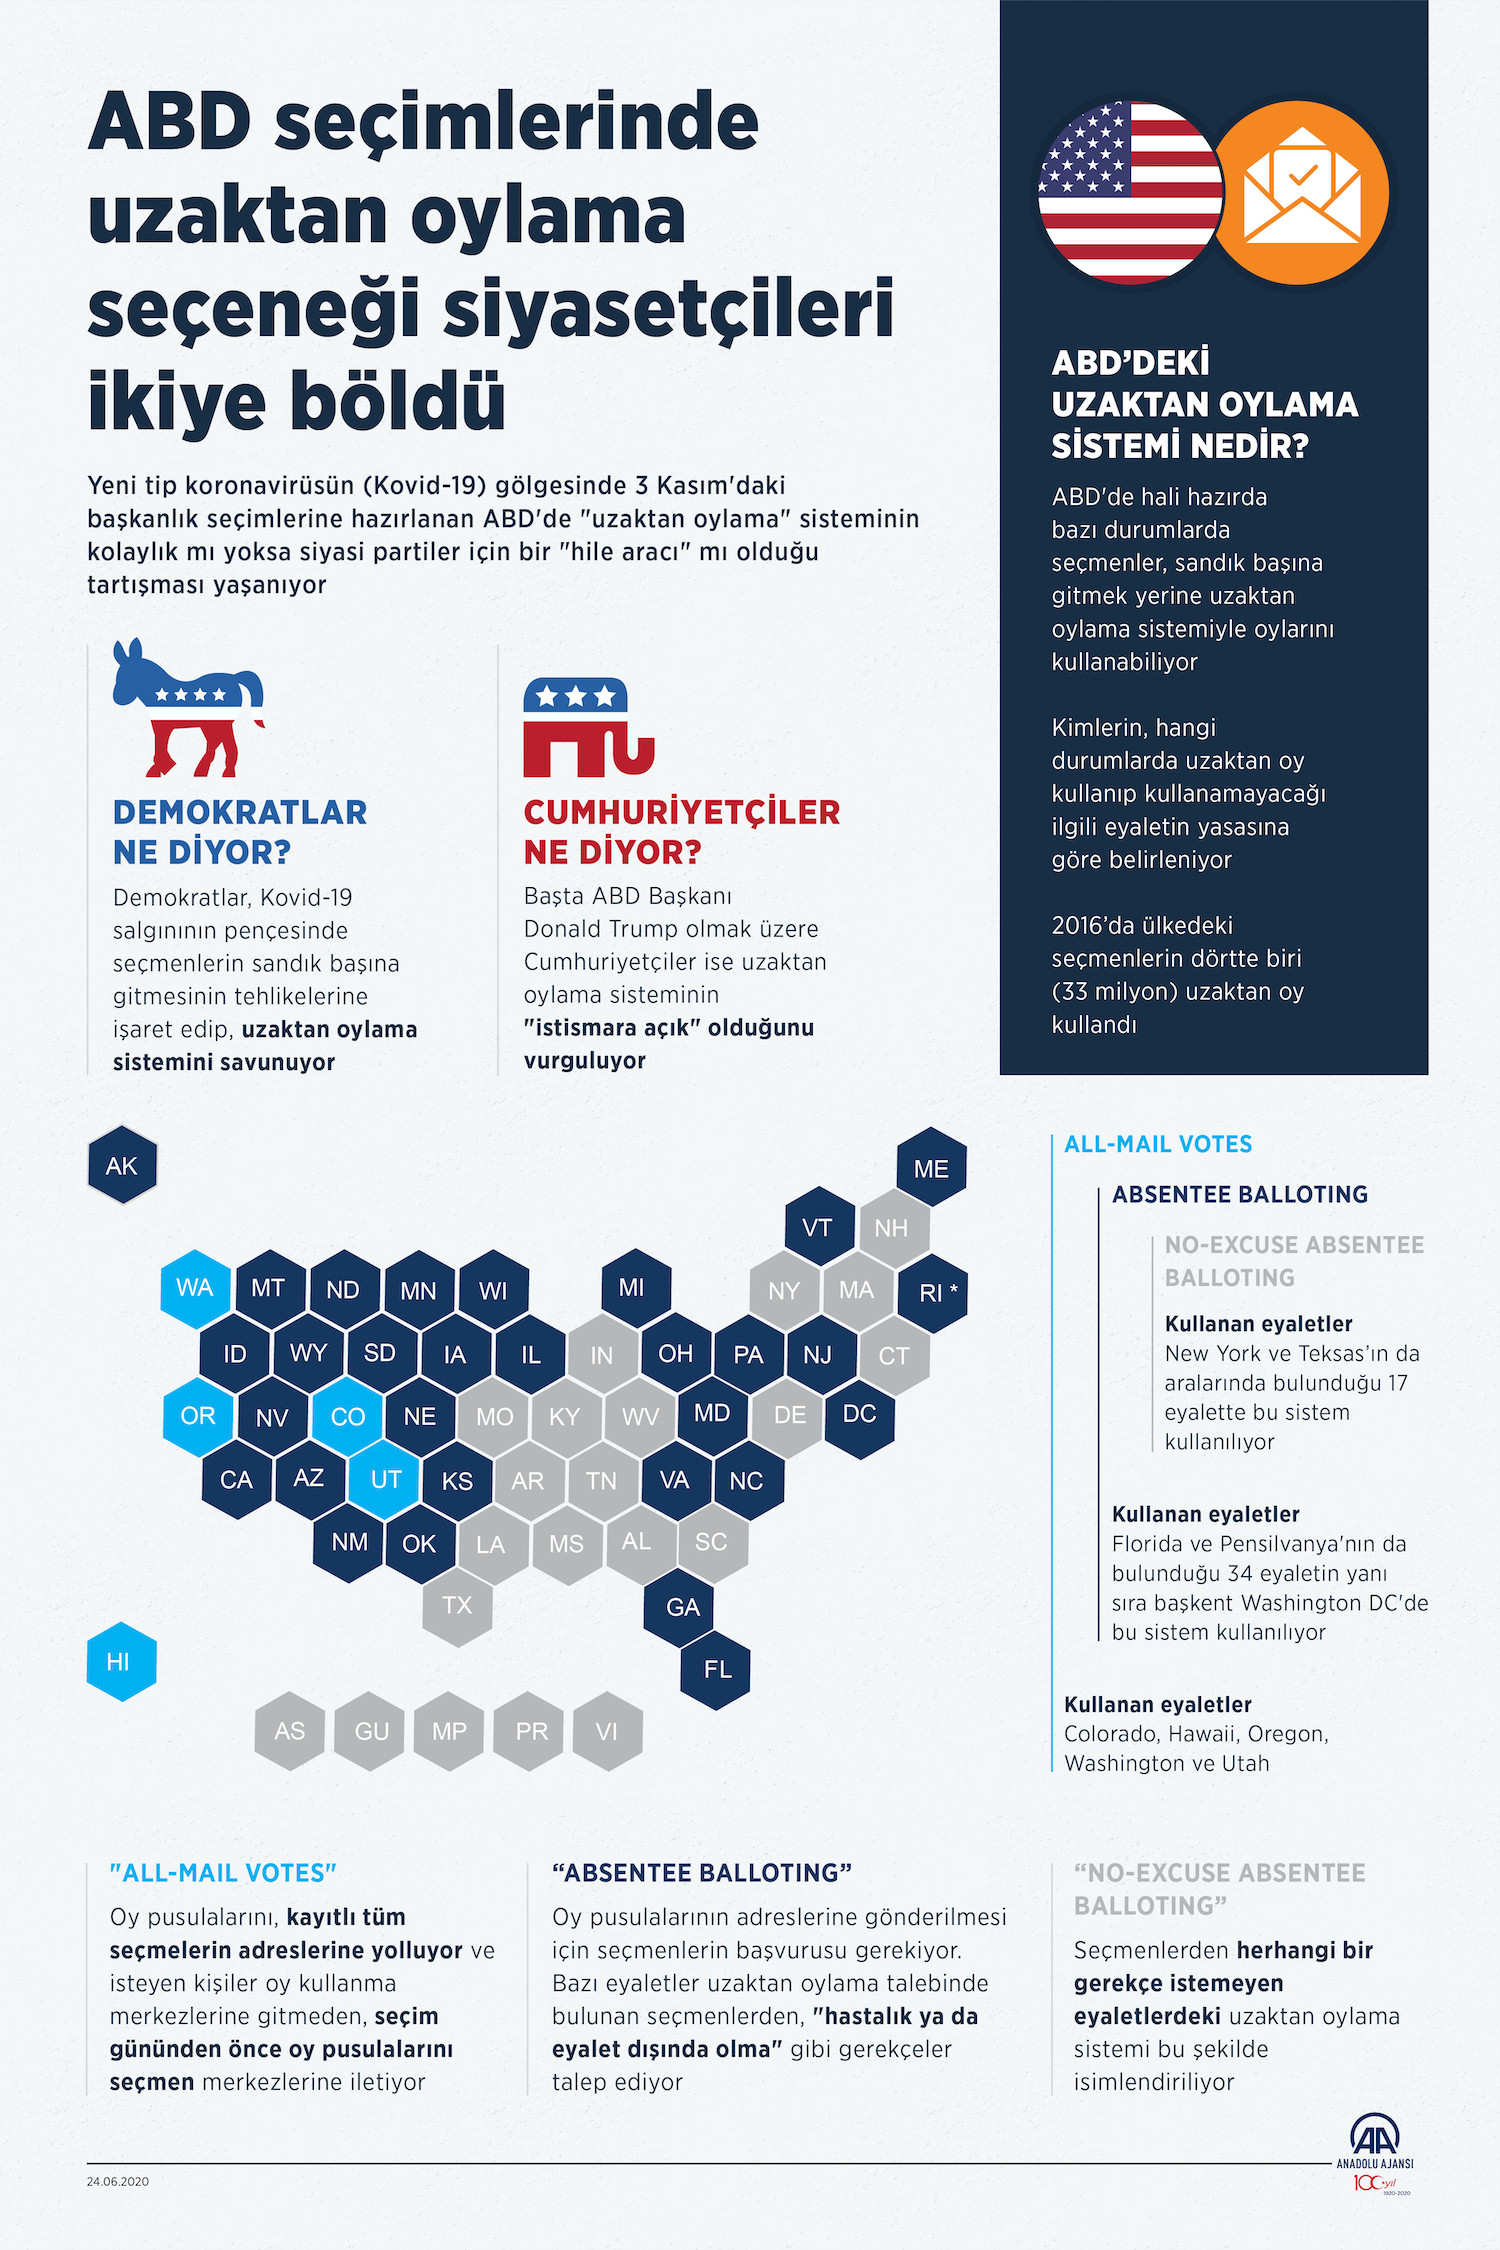 ABD Seçimlerinde Uzaktan Oylama / İnfografik